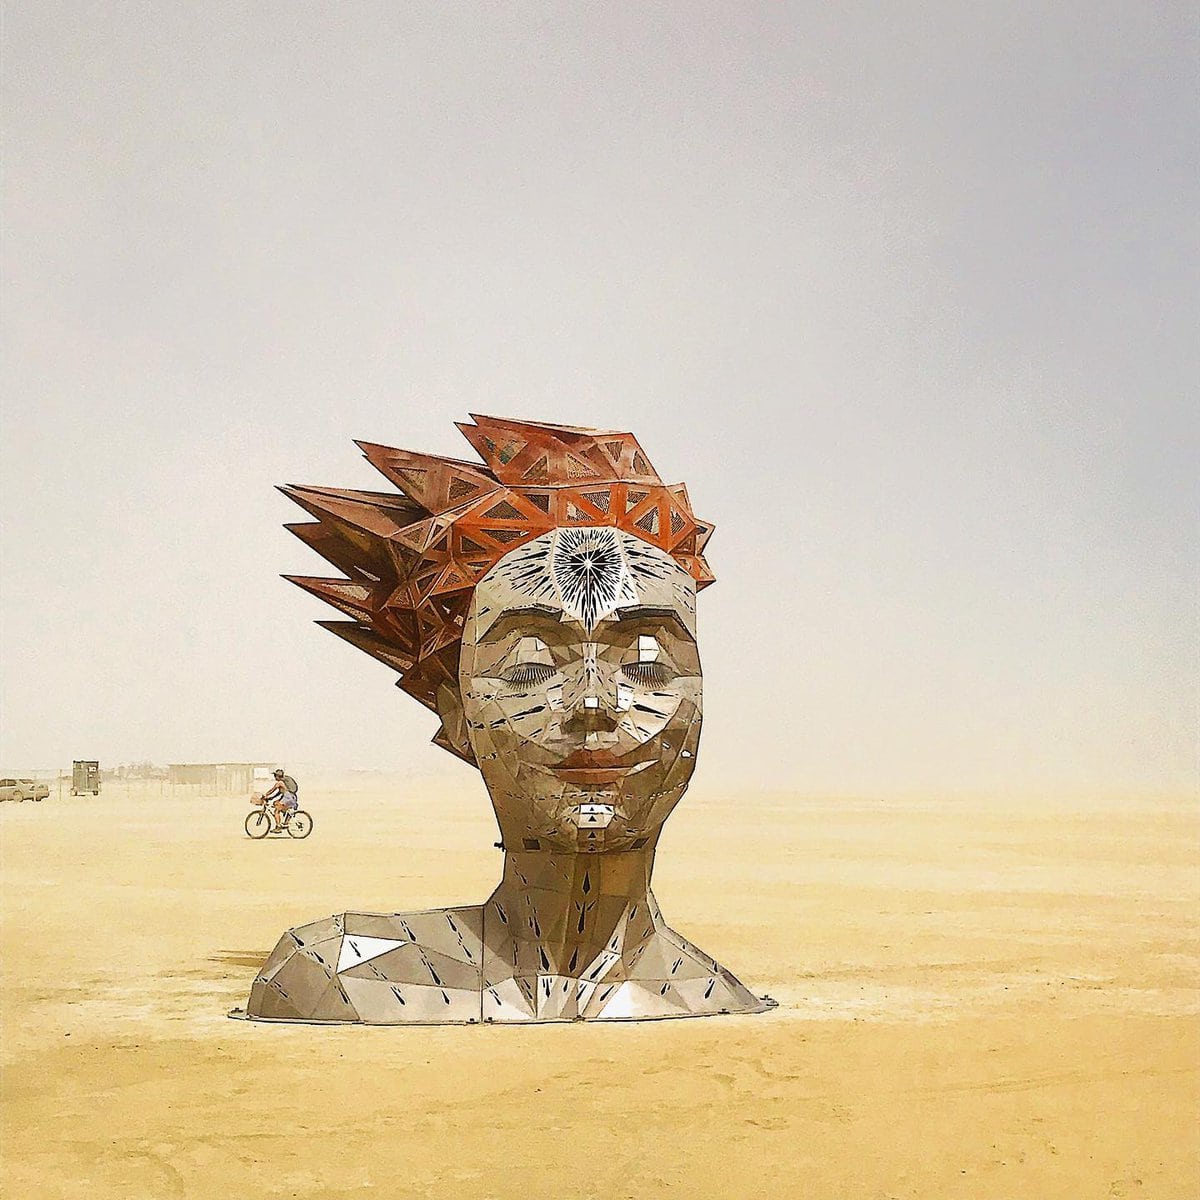 Огненный фестиваль Burning Man вернулся: 16 эпичных фотографий с самого горячего мероприятия планеты 54